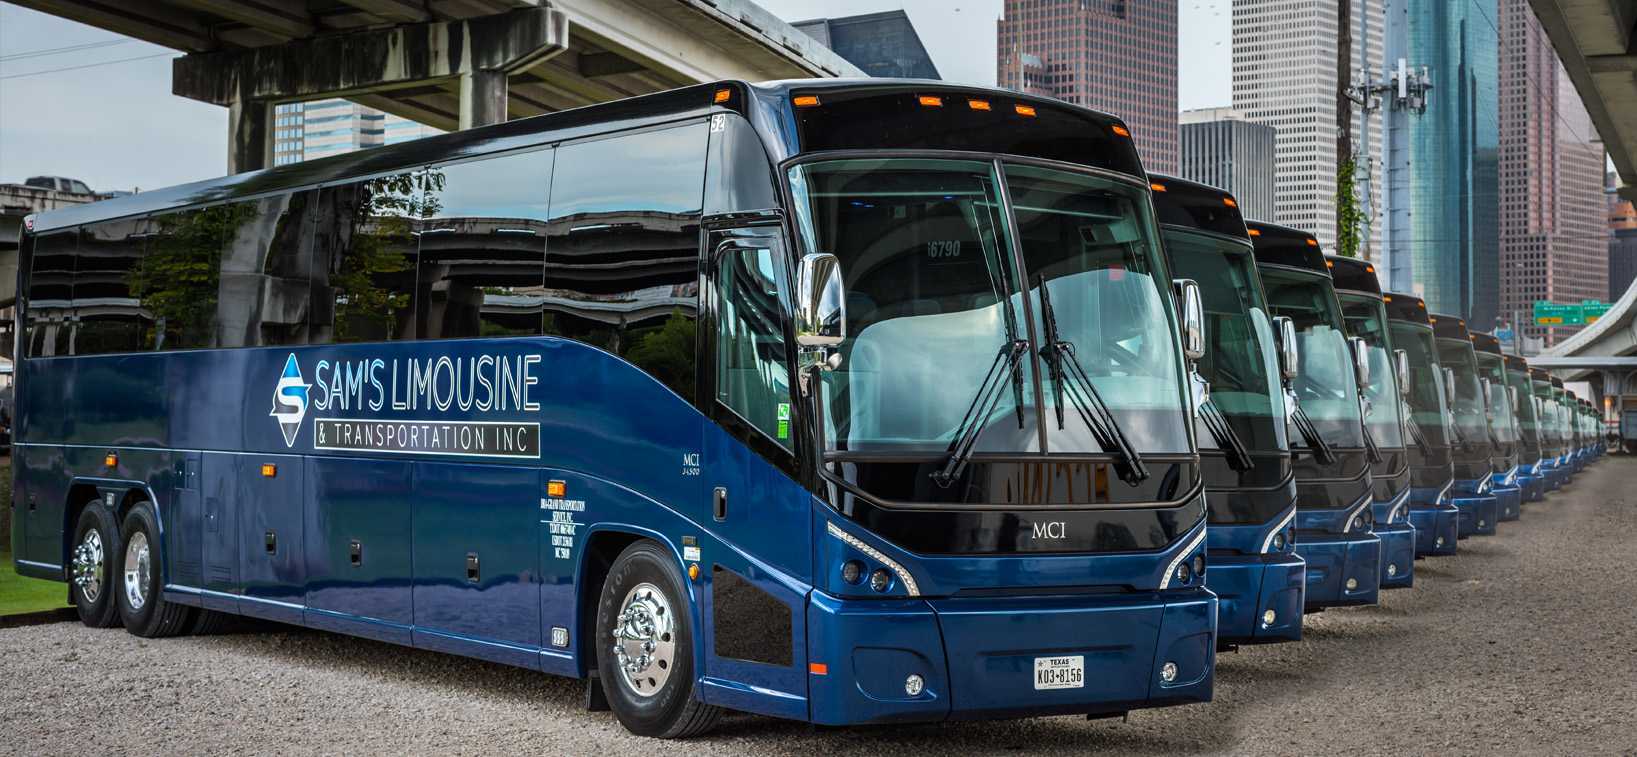 Автобусы америки: междугородные и туристские - обзор автобусной отрасли северной америки